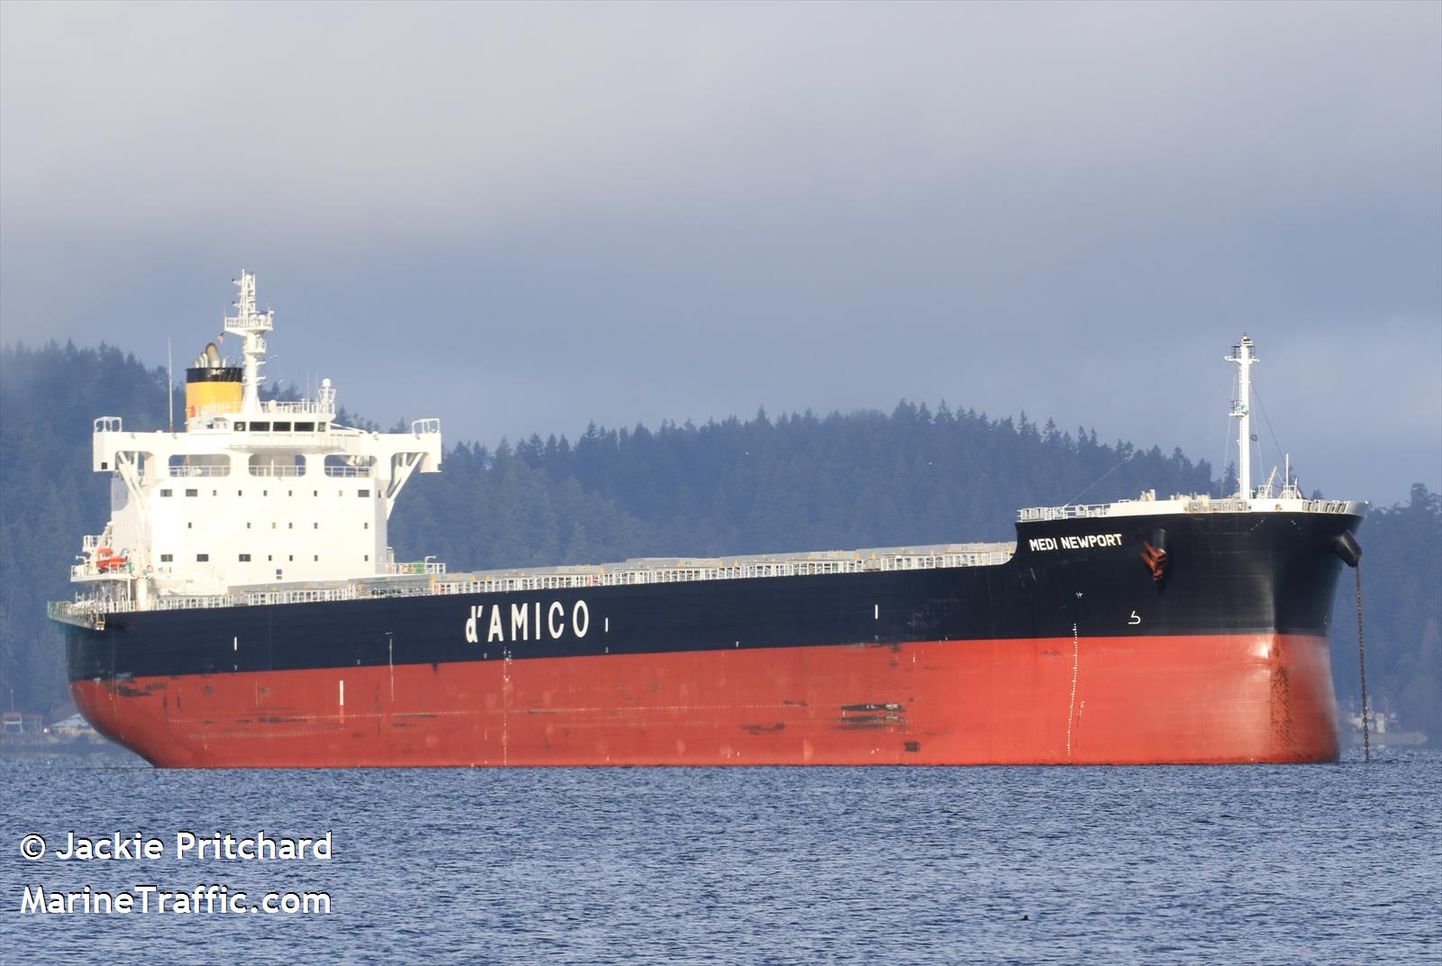 Üks Eesti majandusvööndis Venemaale edasipääsu ootavatest laevadest, Panama lipu alll sõitev 229 meetri pikkune kaubalaev Medi Newport